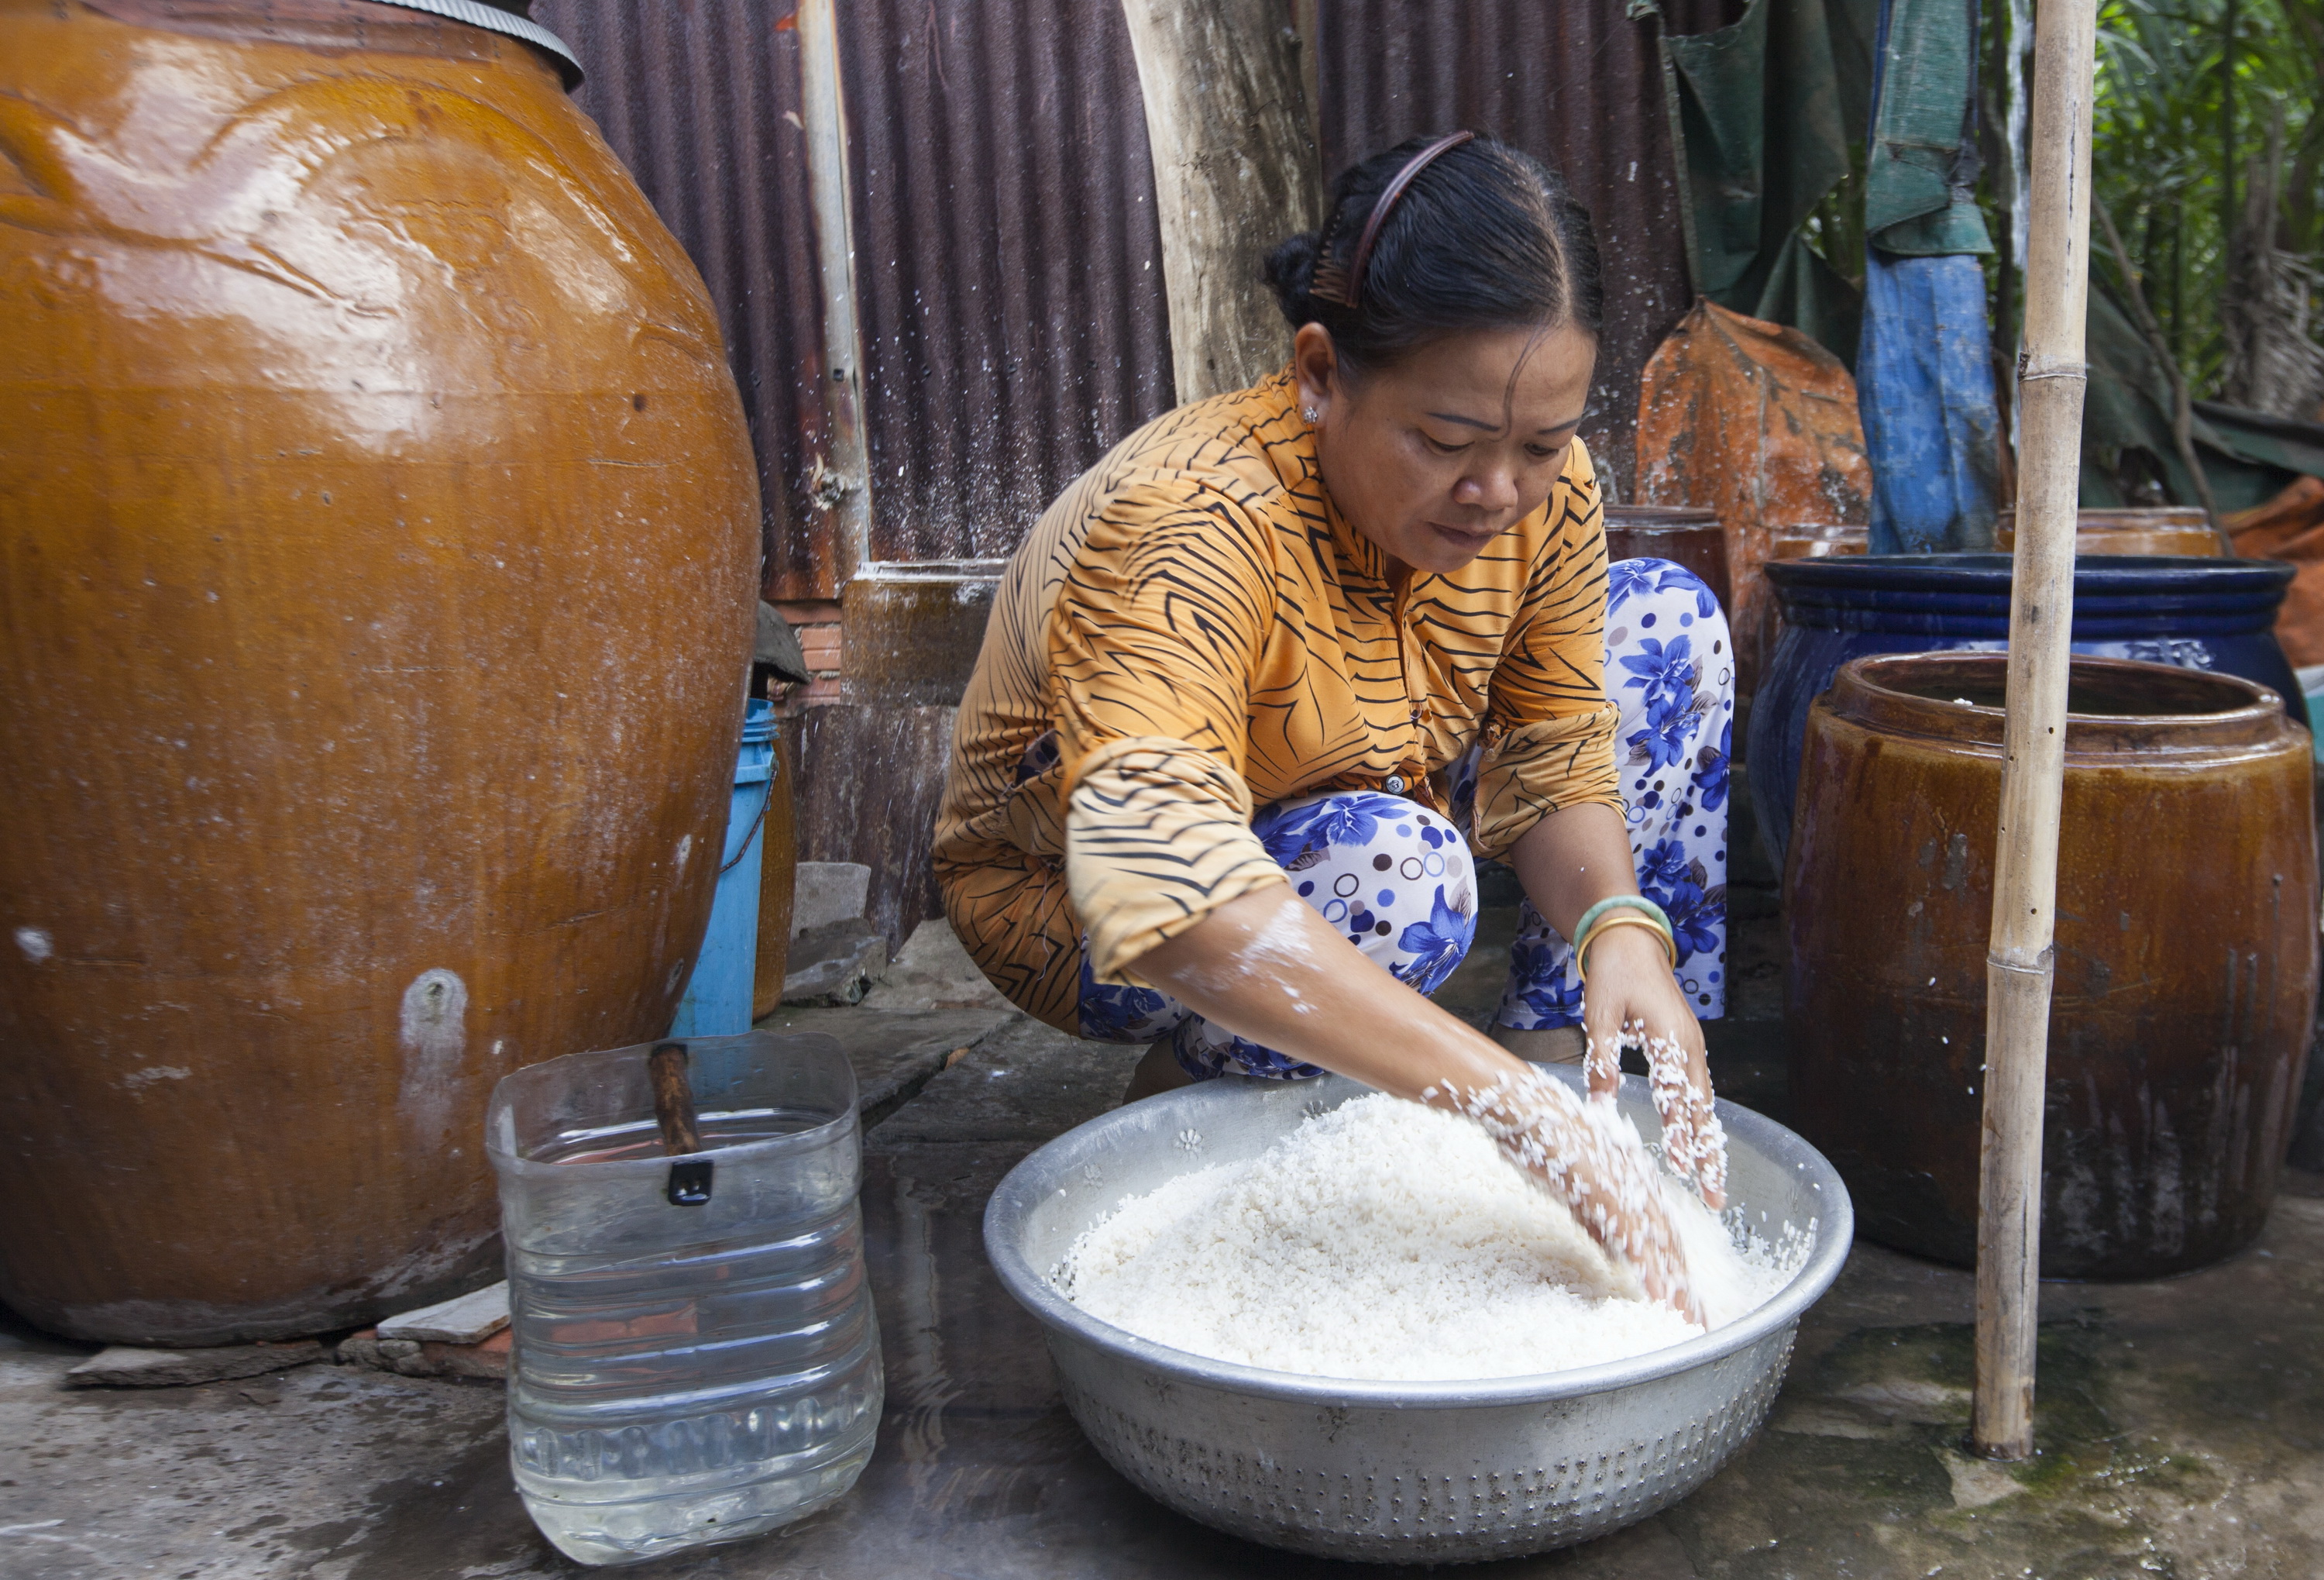 Gạo để làm bánh tráng Nhơn Hòa là loại gạo 504 ngâm khoảng 24 tiếng với nguồn nước giếng của làng                                                      